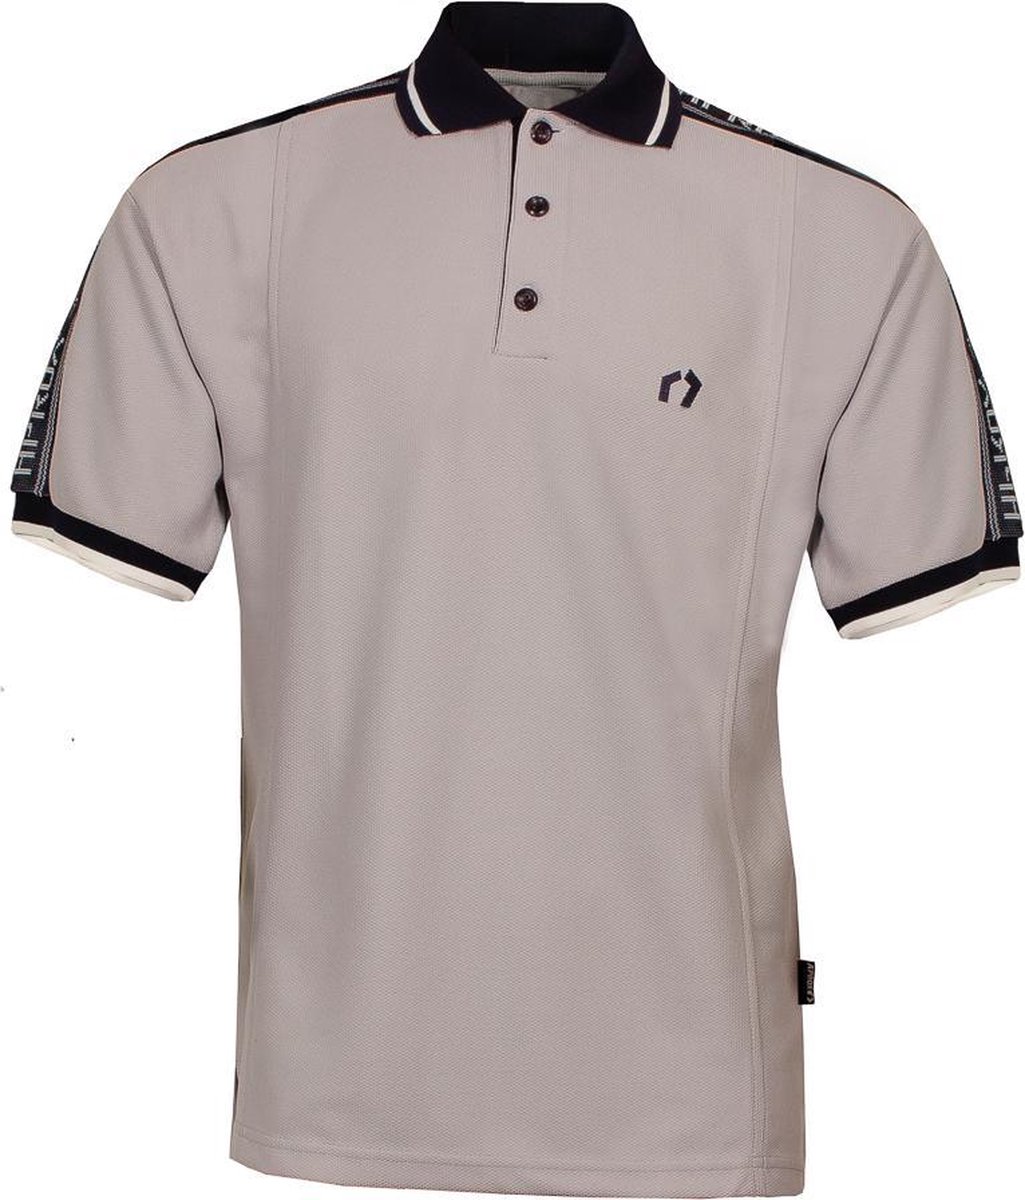 Heren jaren 50 Vintage Look polo shirt van ons merk A’prox Grijs met tekst op mouwen PSH5075S Maat M